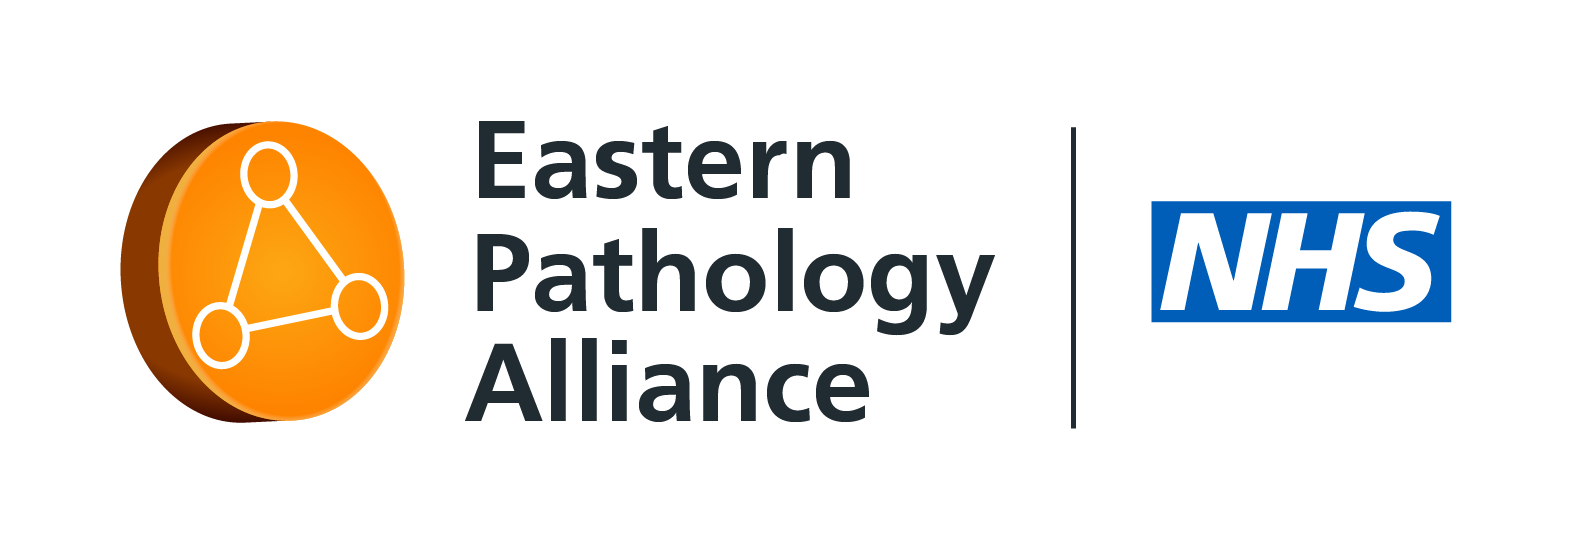 Eastern Pathology Alliance